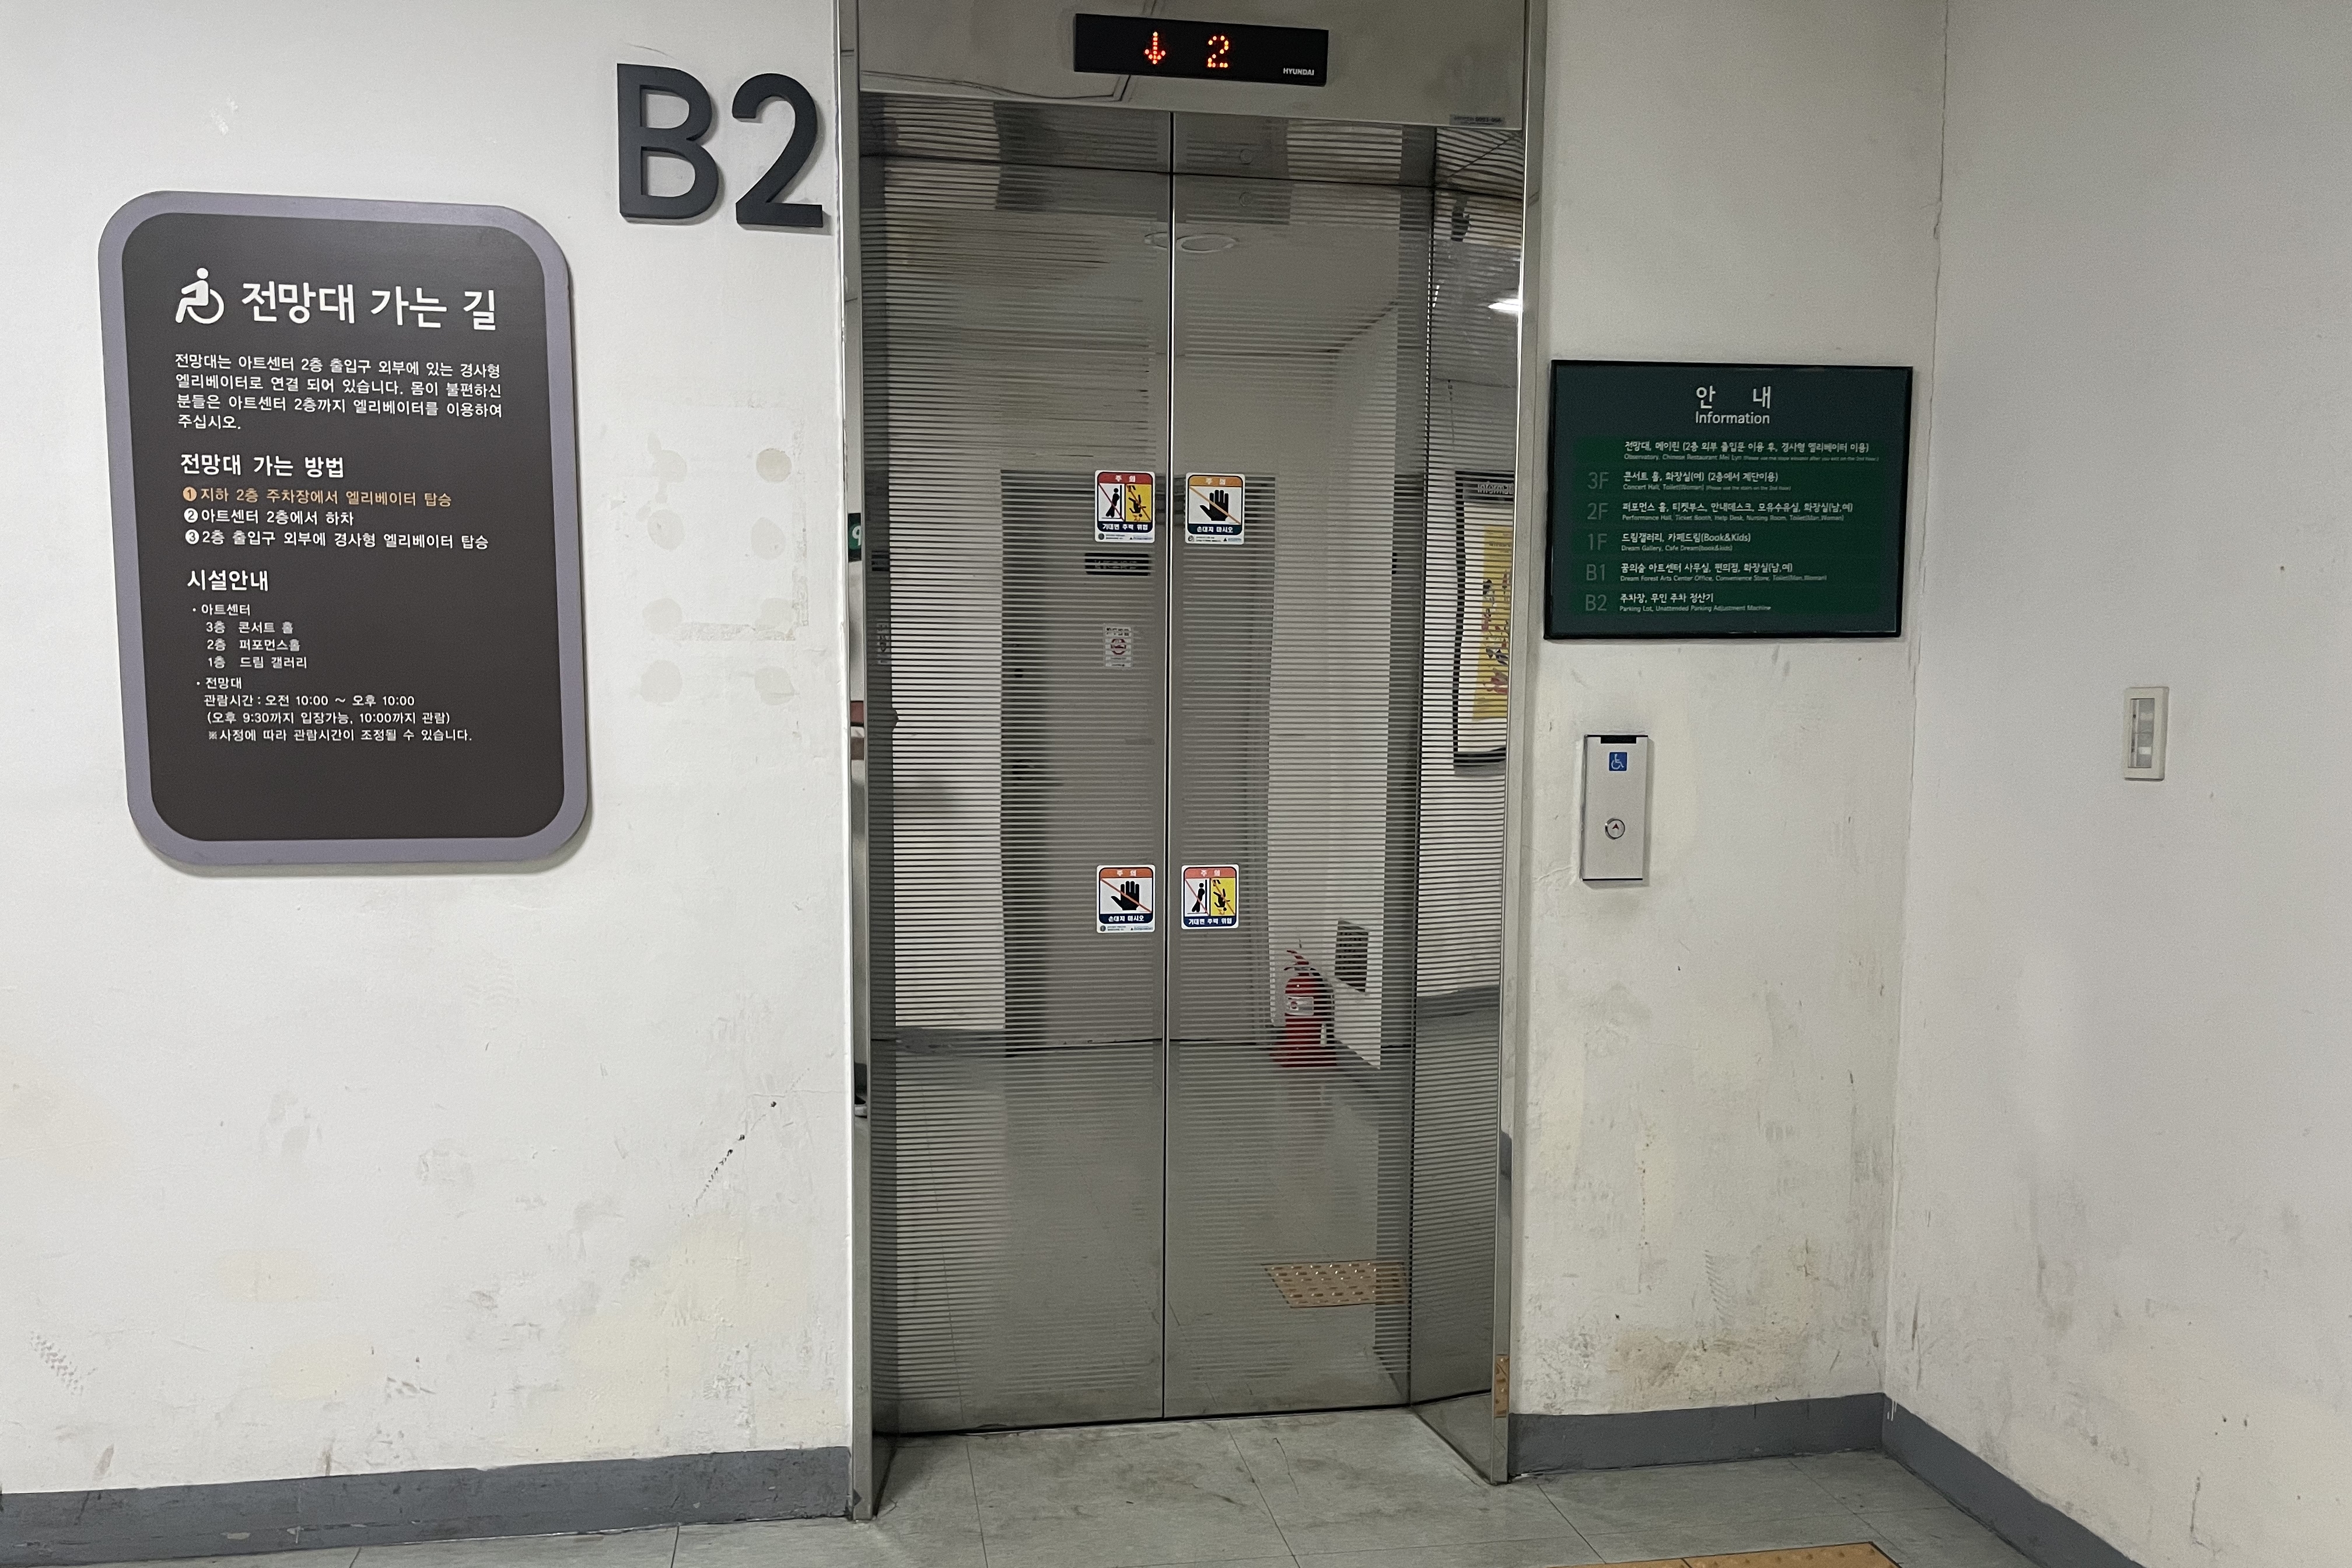 엘리베이터0 : 문 폭이 다소 좁은 엘리베이터